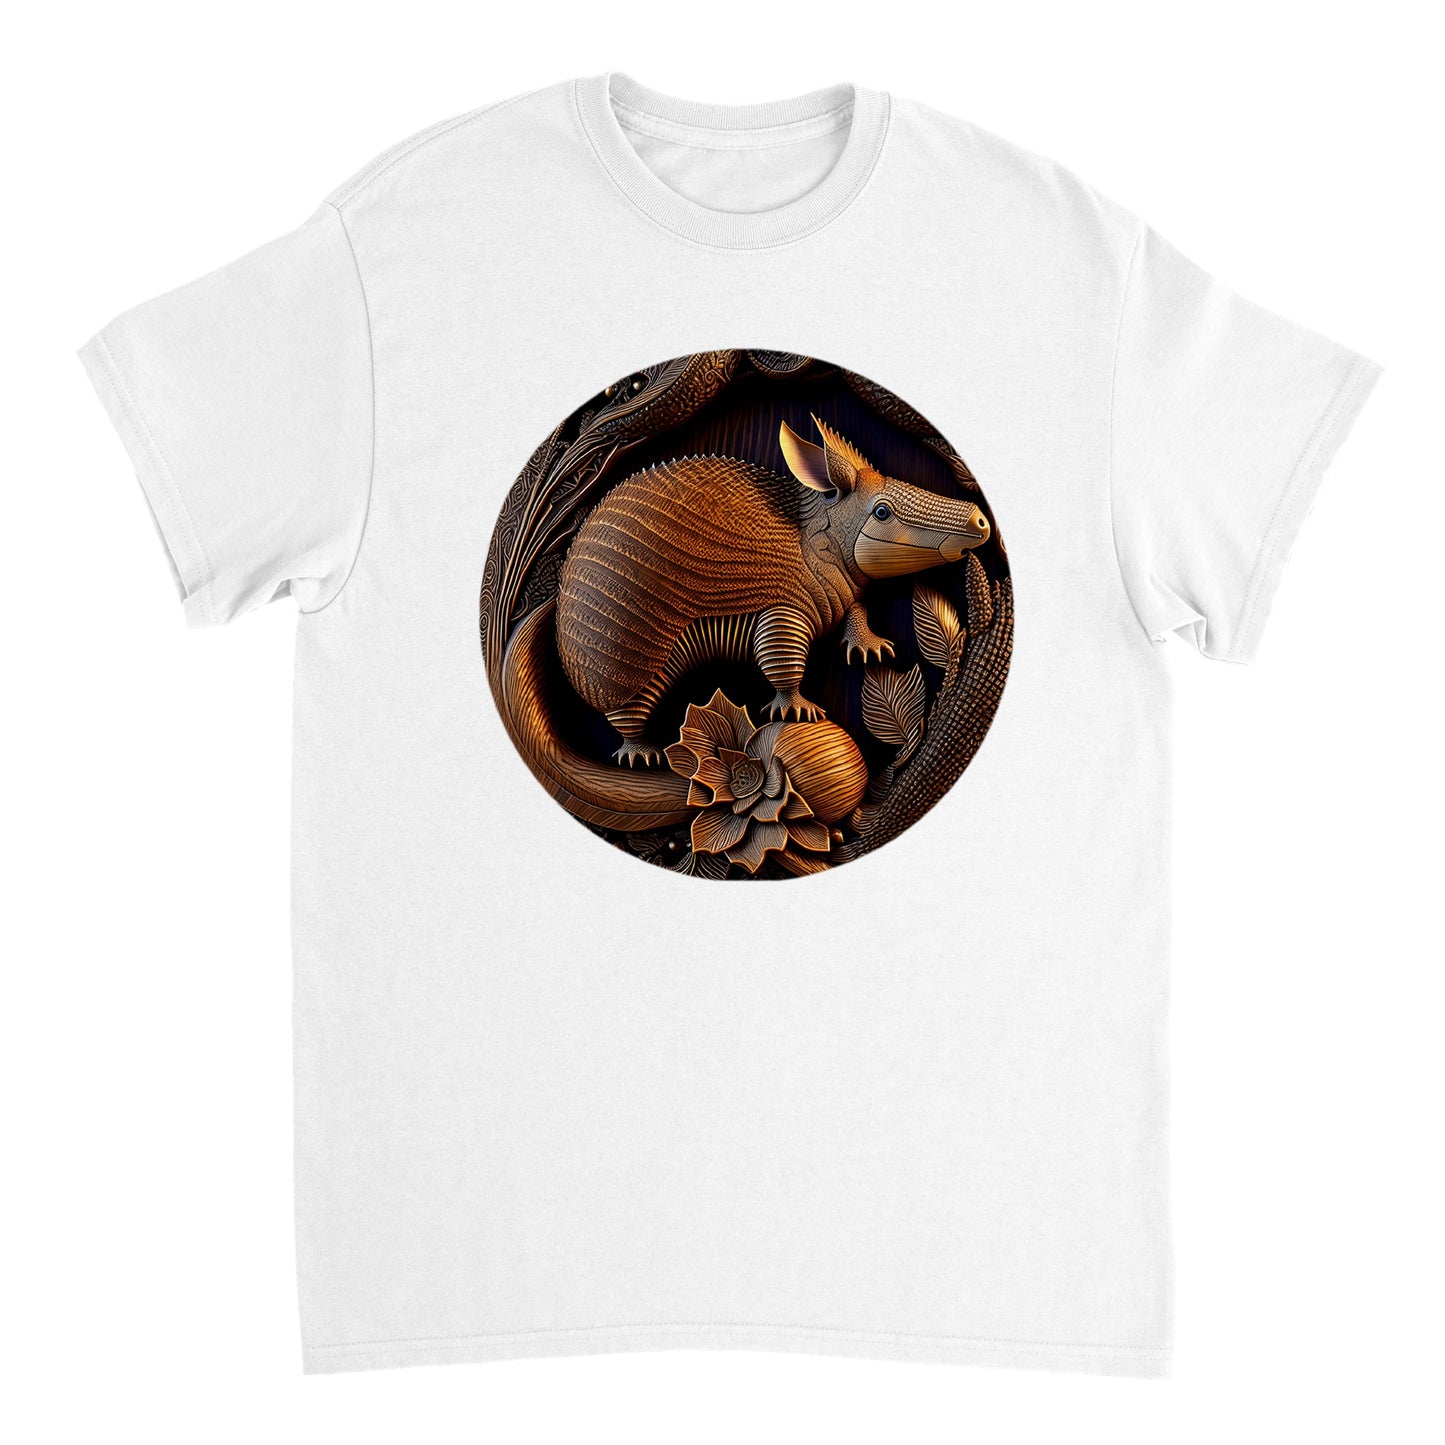 3D Wooden Animal Art - Heavyweight Unisex Crewneck T-shirt 25